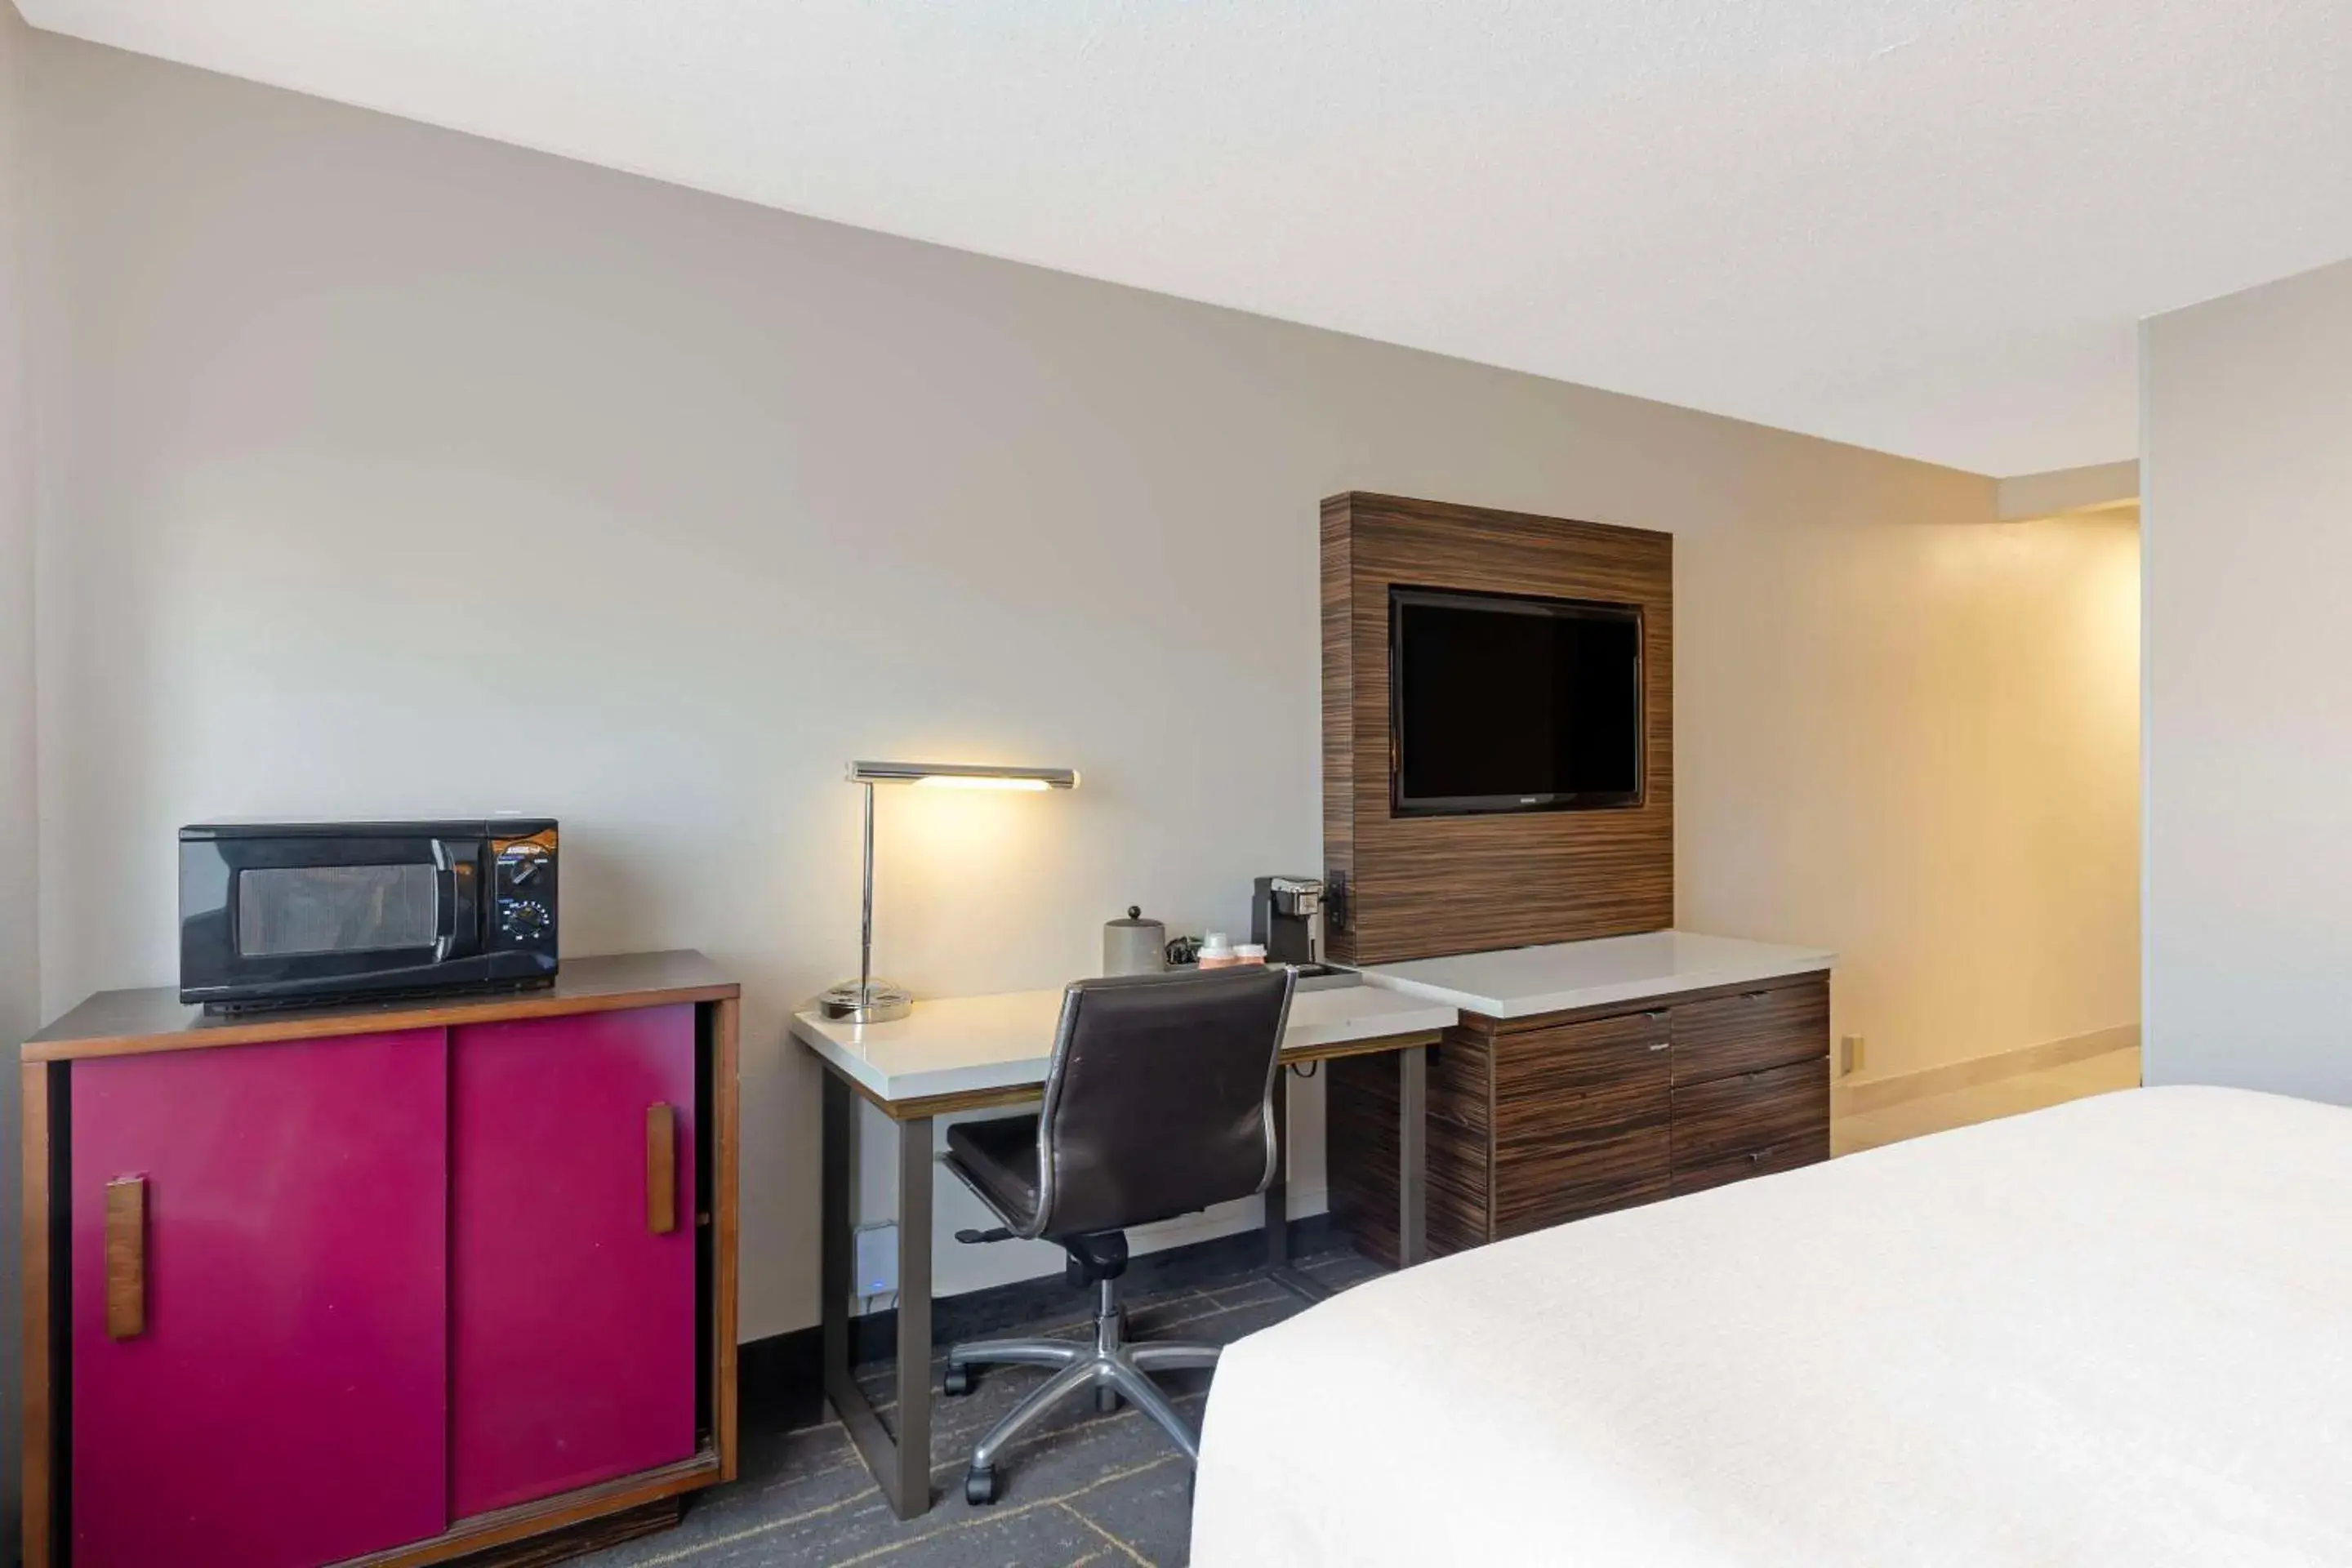 Bedroom, TV/Entertainment Center in Quality Inn near Finger Lakes and Seneca Falls